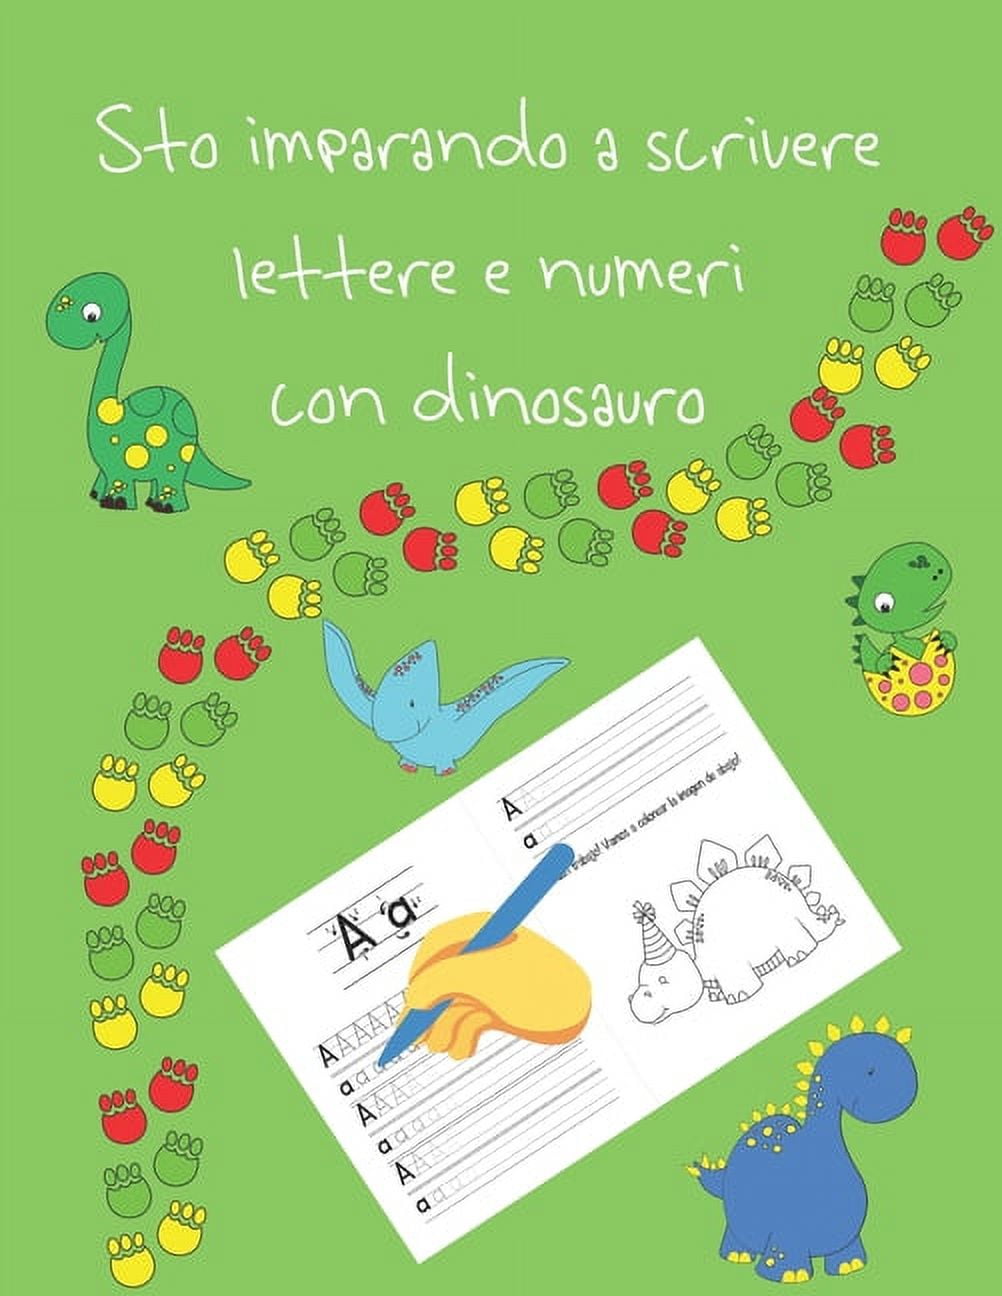 Sto imparando a scrivere lettere e numeri con dinosauro : libri per  tracciare le lettere per bambini di 4-8 anni, pagine per imparare a  scrivere lettere e numeri e per colorare, scrivere